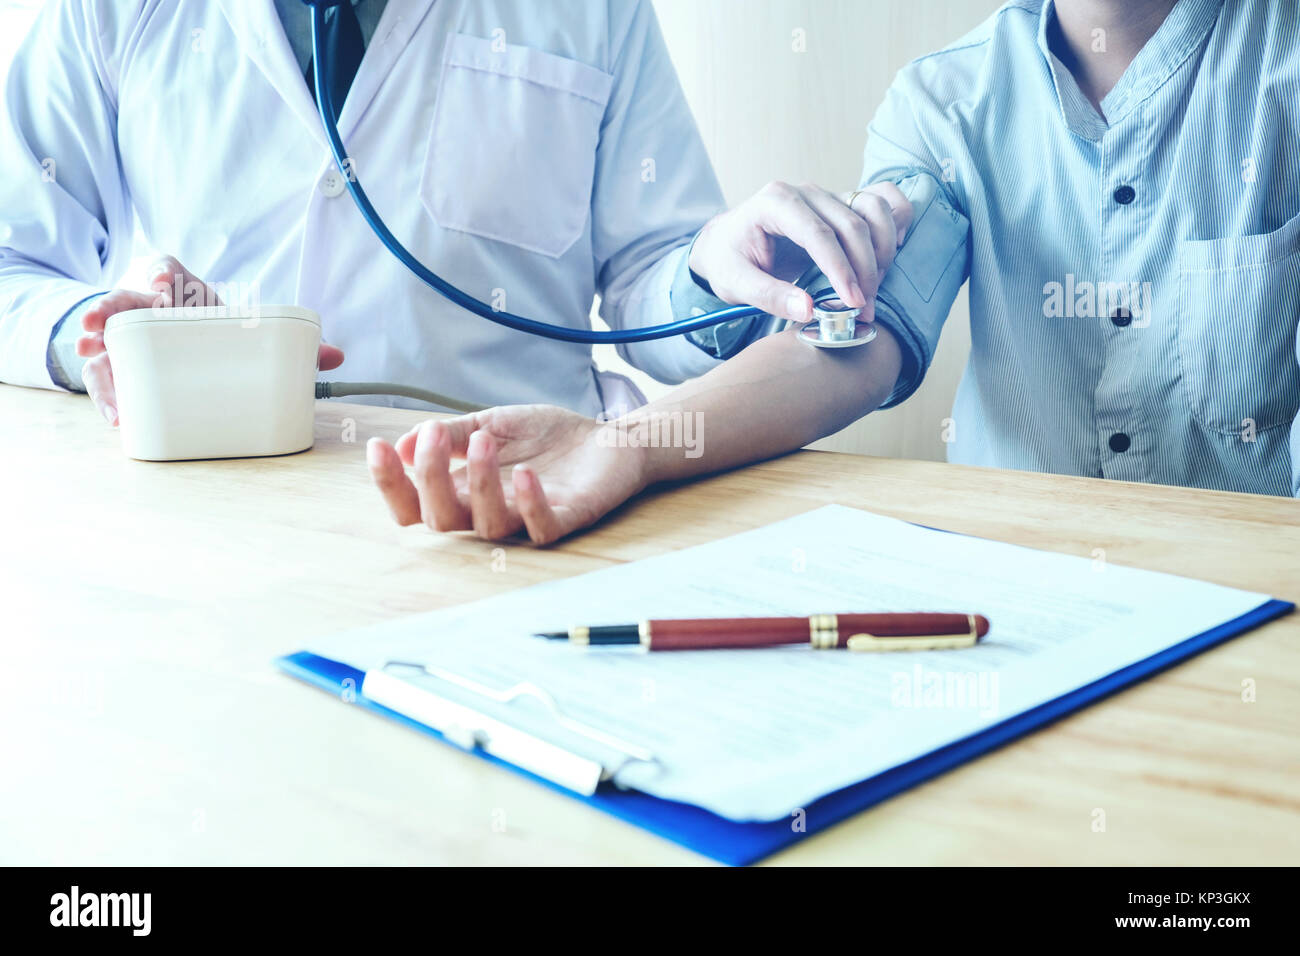 Arzt Messung des arteriellen Blutdruck Frau am Arm des Patienten medizinische Versorgung im Krankenhaus Stockfoto